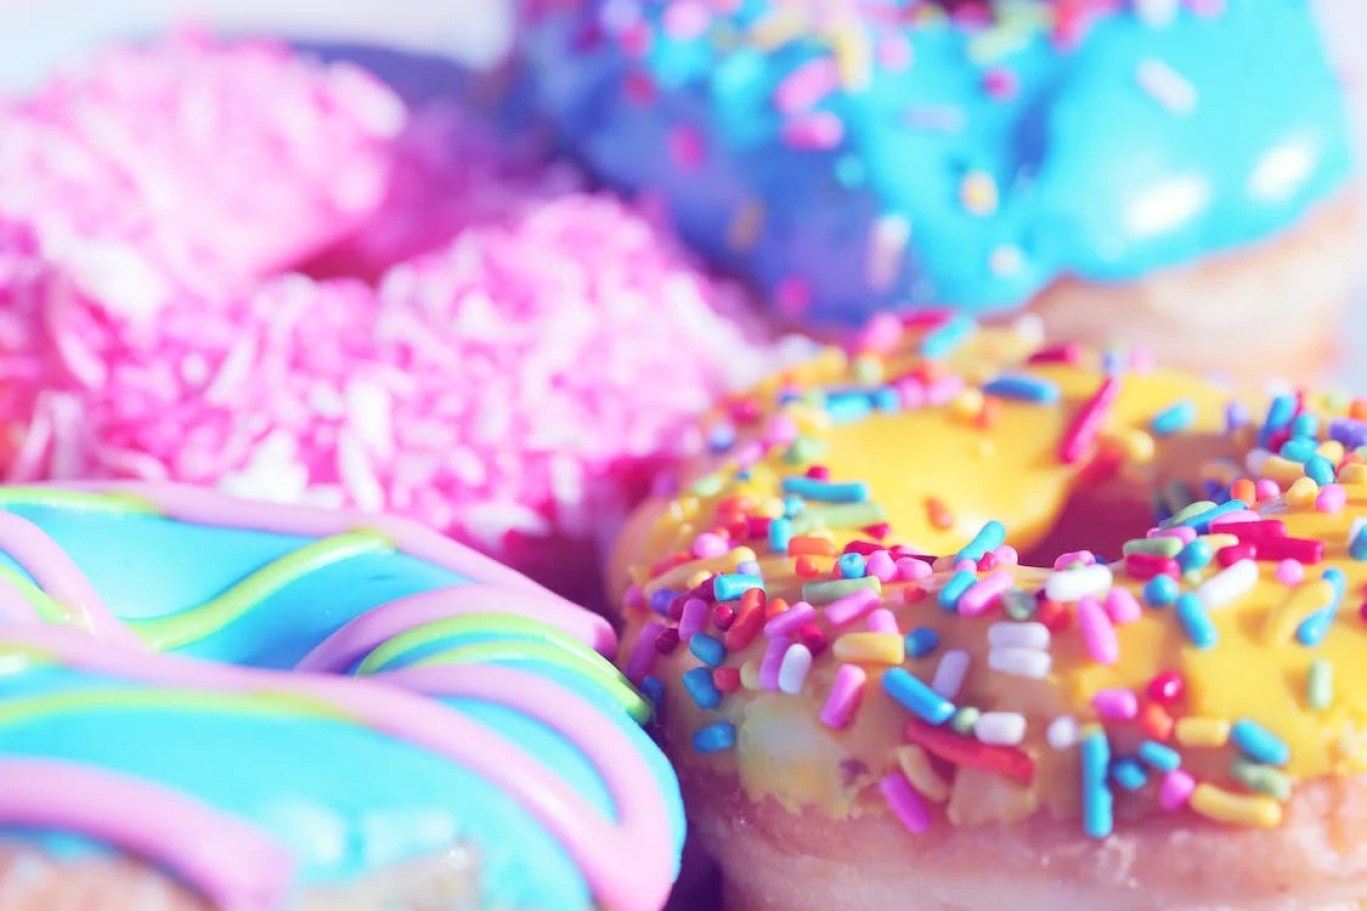 크리스피 크림 도넛을 먹으면 놀라운 건강상의 이점 5가지